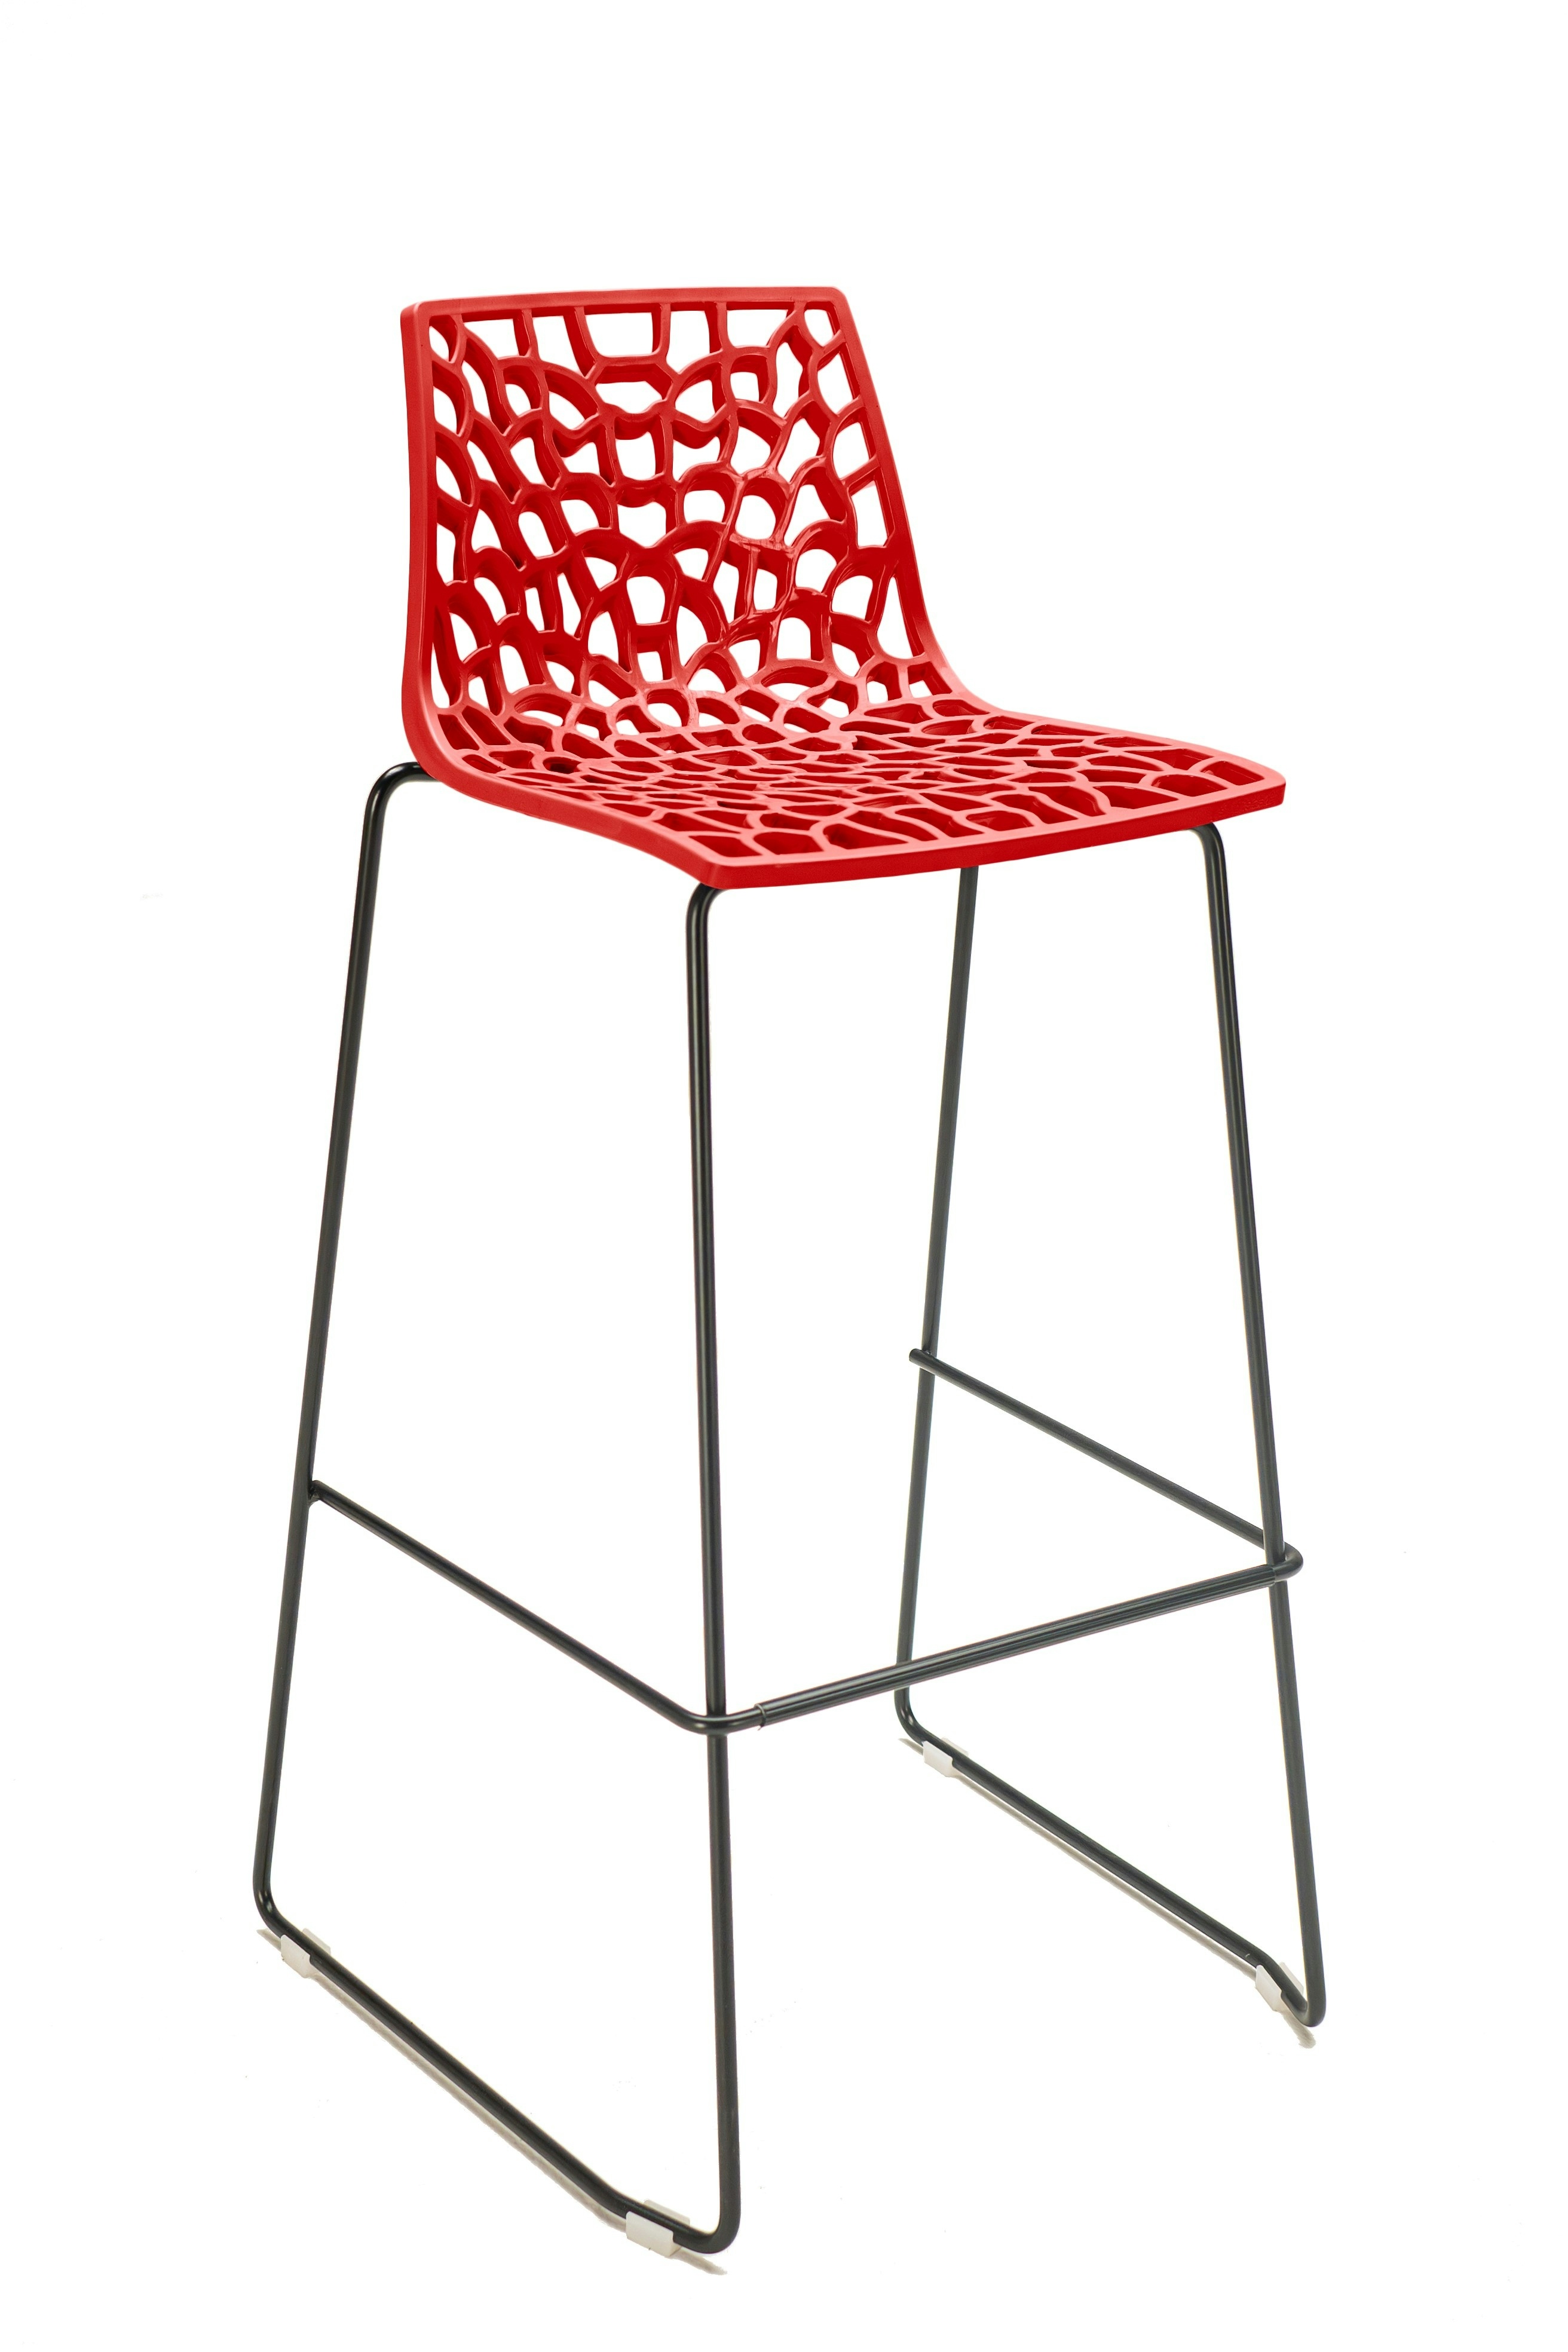 GRANDSOLEIL BARSTUHL SPIDER mit glänzendem Polypropylen-Sitz rot und schwarz lackiertem Rundstab Metallgestell.